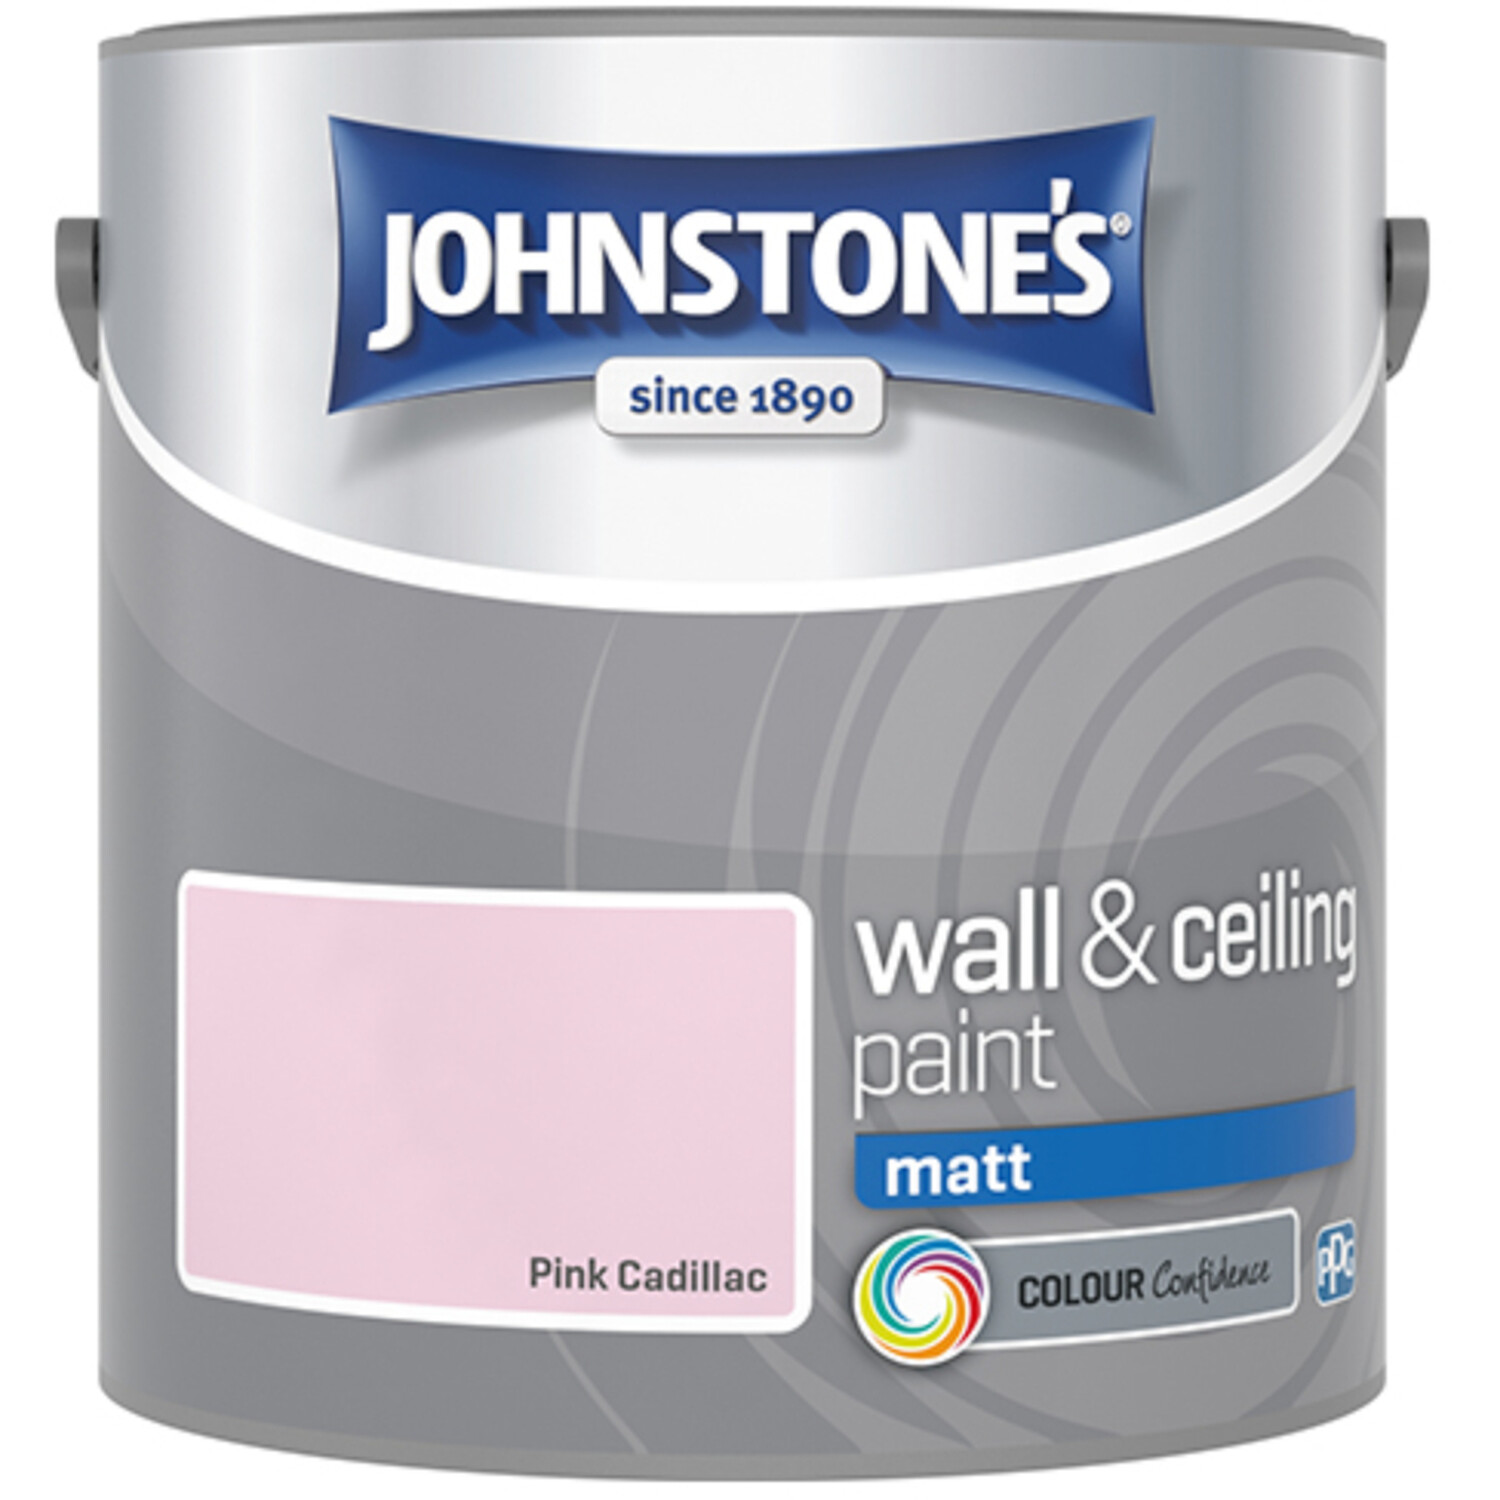 Johnstones Matt Emulsion Paint - Pink Cadillac / 2.5l Image 2